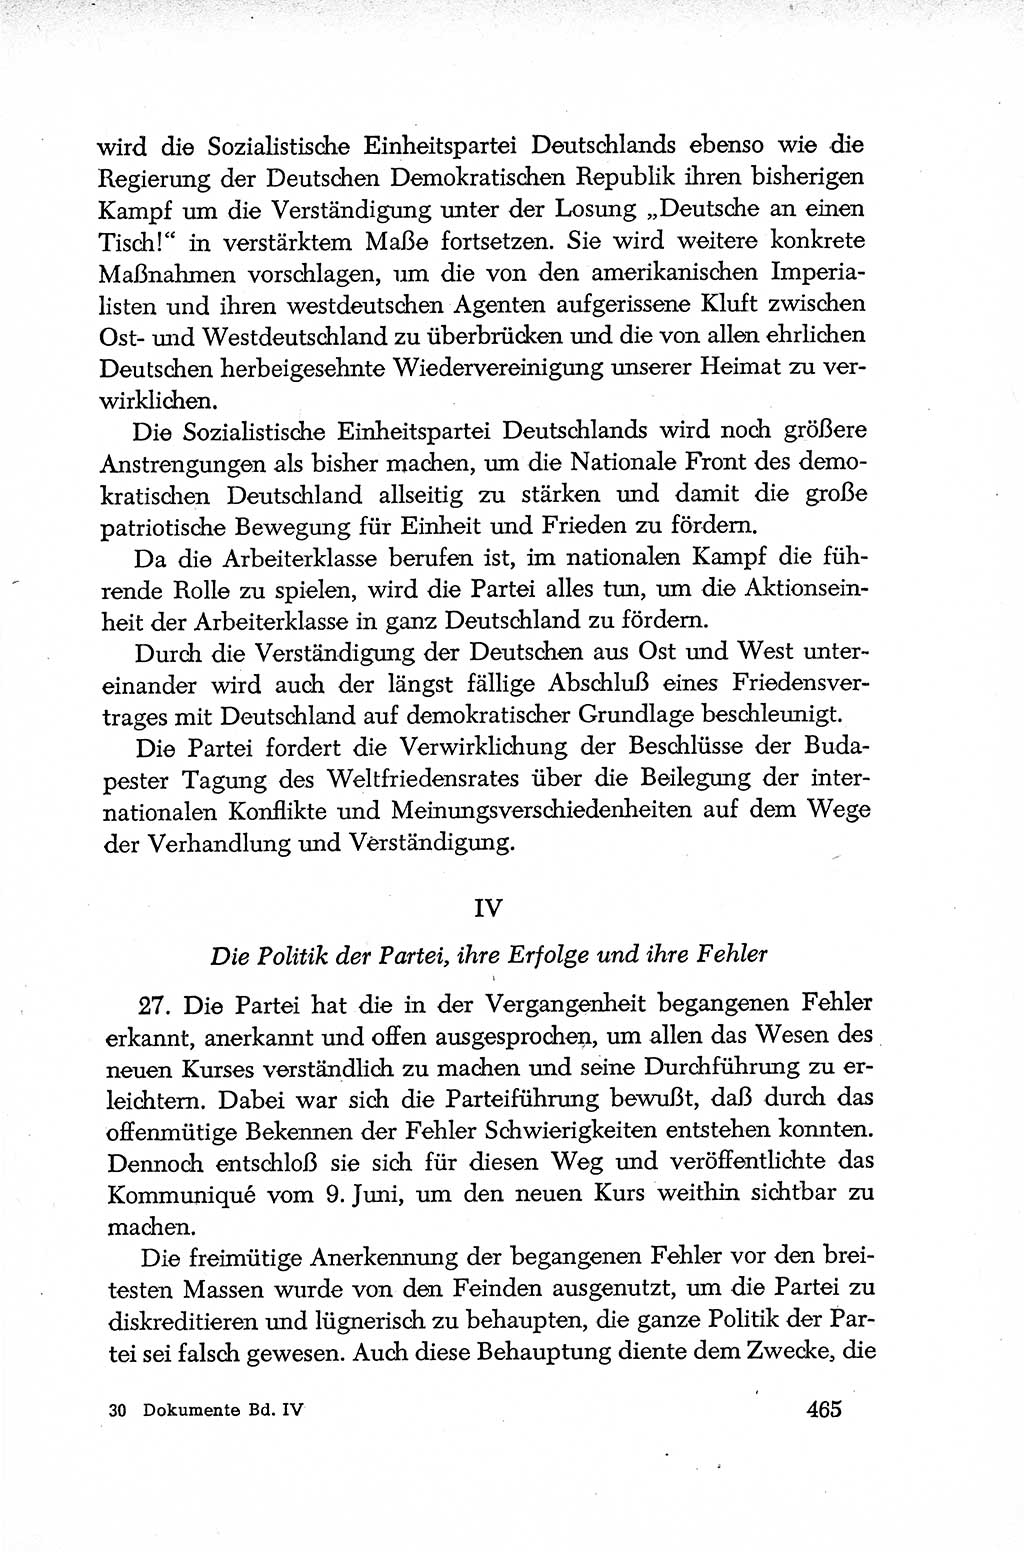 Dokumente der Sozialistischen Einheitspartei Deutschlands (SED) [Deutsche Demokratische Republik (DDR)] 1952-1953, Seite 465 (Dok. SED DDR 1952-1953, S. 465)